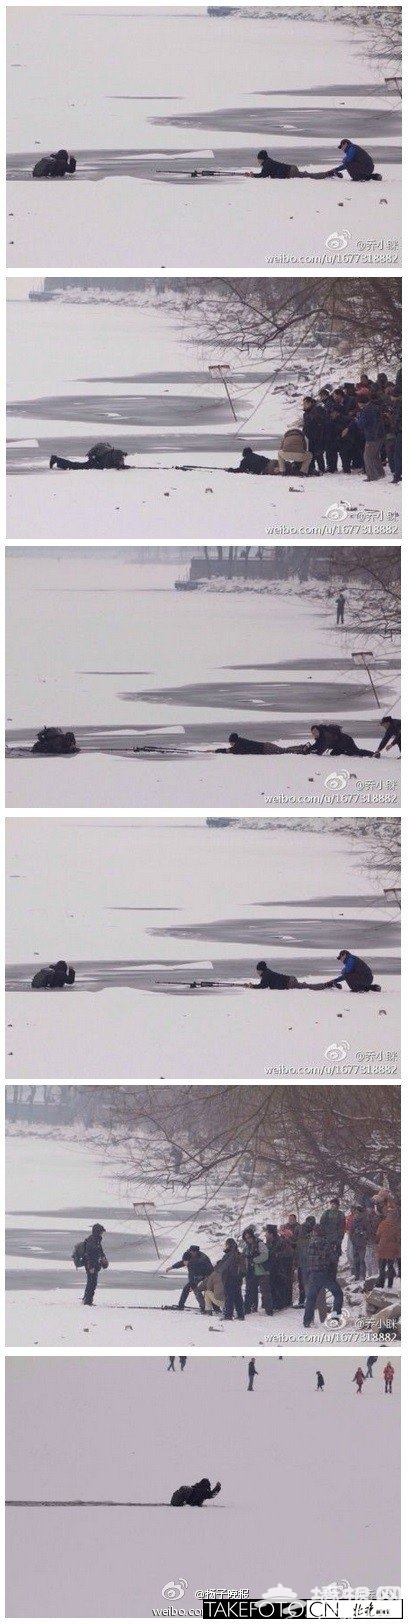 影友拍初雪掉进昆明湖 围观者搭人桥3分钟救人